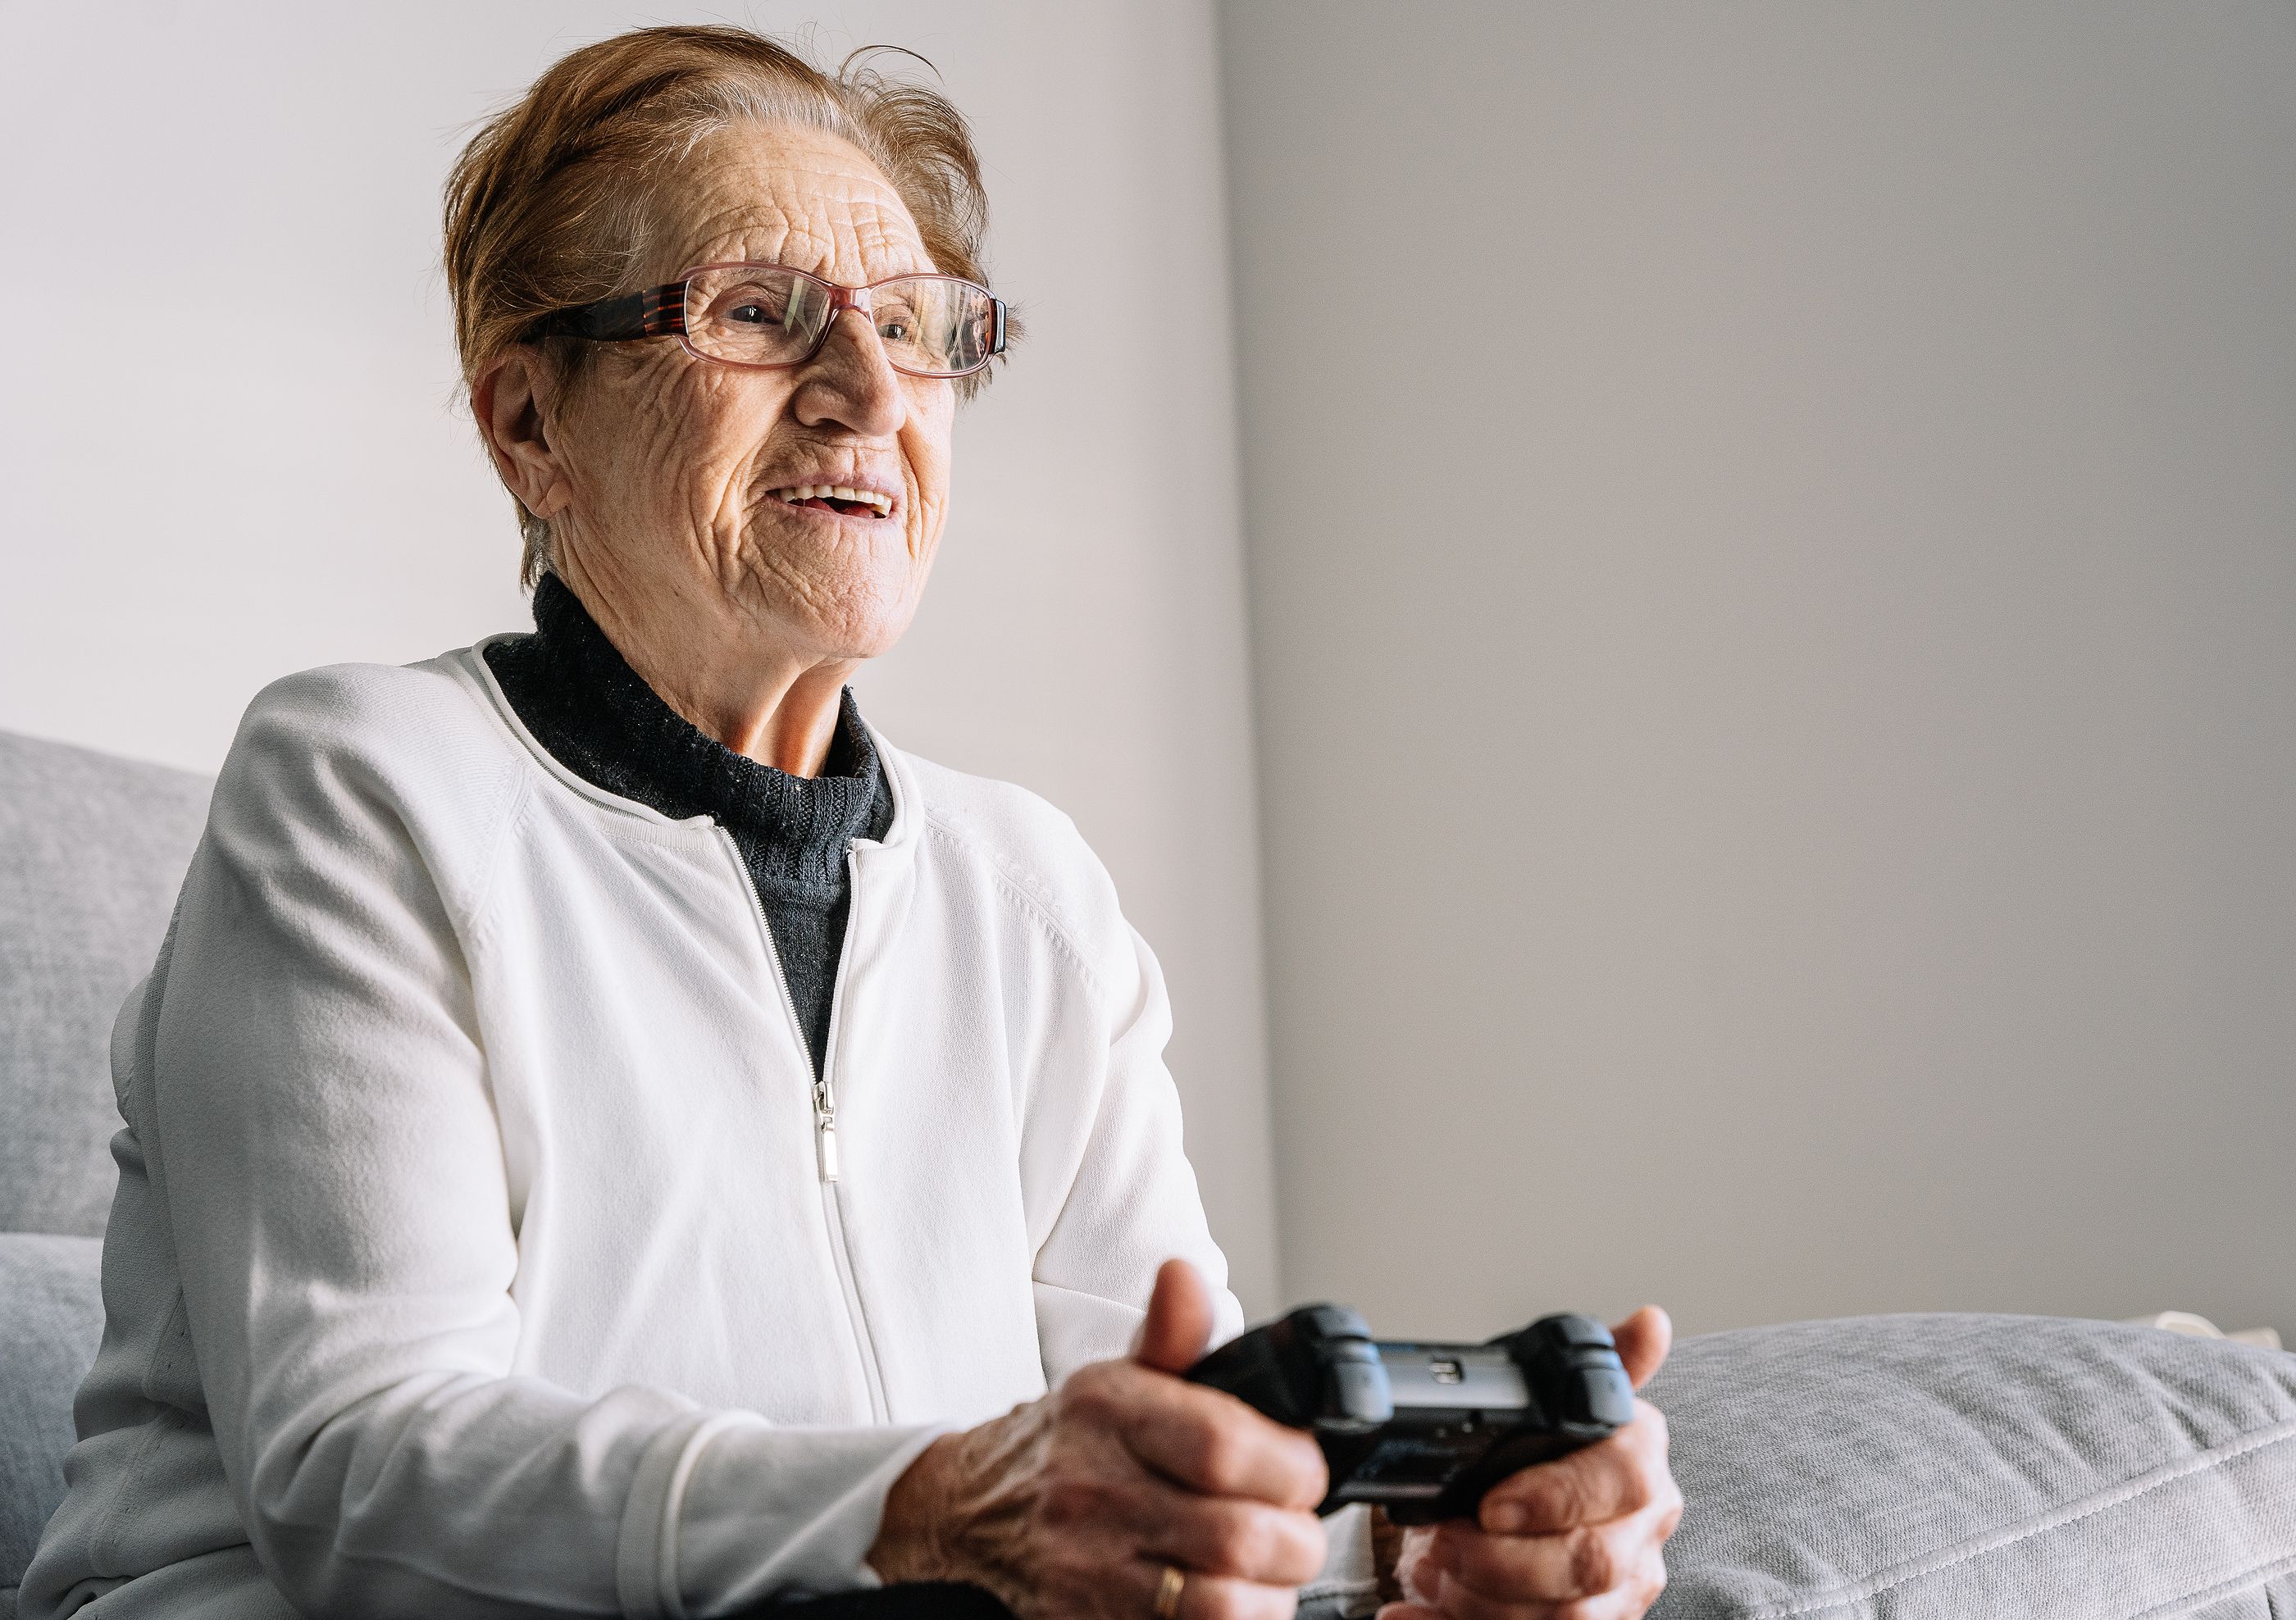 Un estudio demuestra que los videojuegos ayudan a prevenir caídas en personas mayores